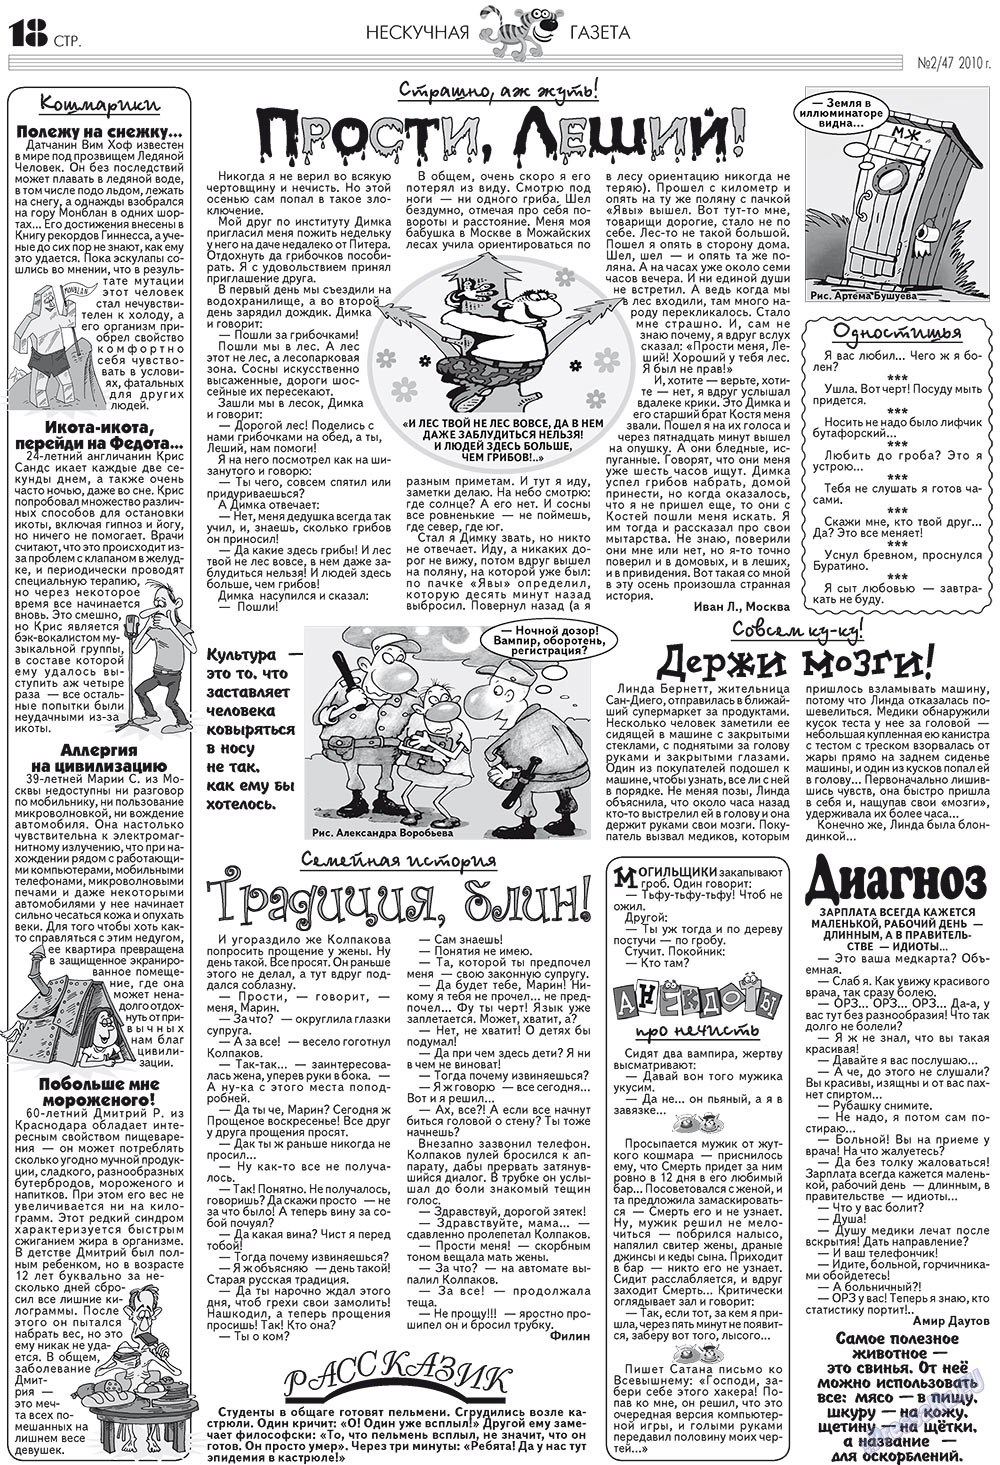 Нескучная газета (журнал). 2010 год, номер 2, стр. 14